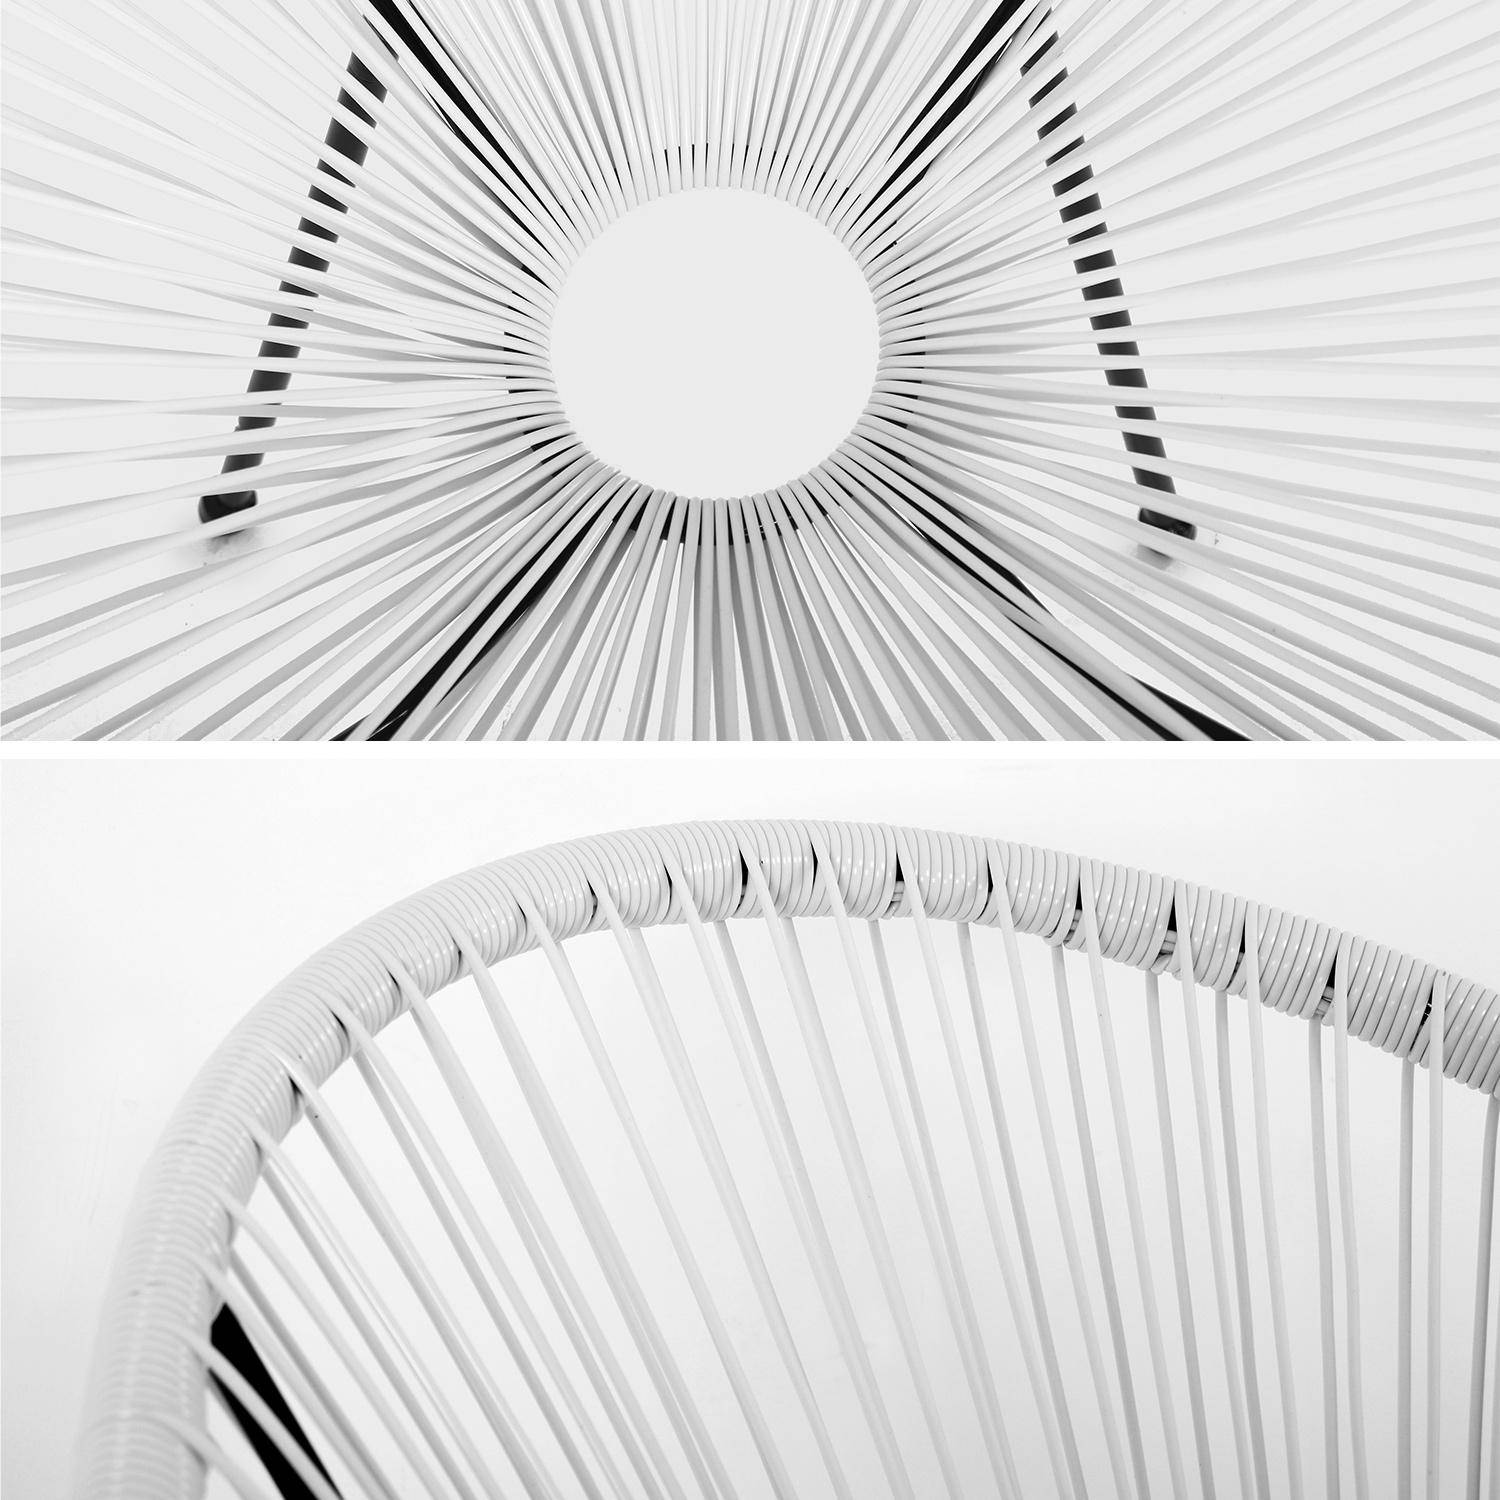 Lot de 2 fauteuils design Oeuf - Acapulco blanc- Fauteuils 4 pieds design rétro, cordage plastique, intérieur / extérieur Photo7